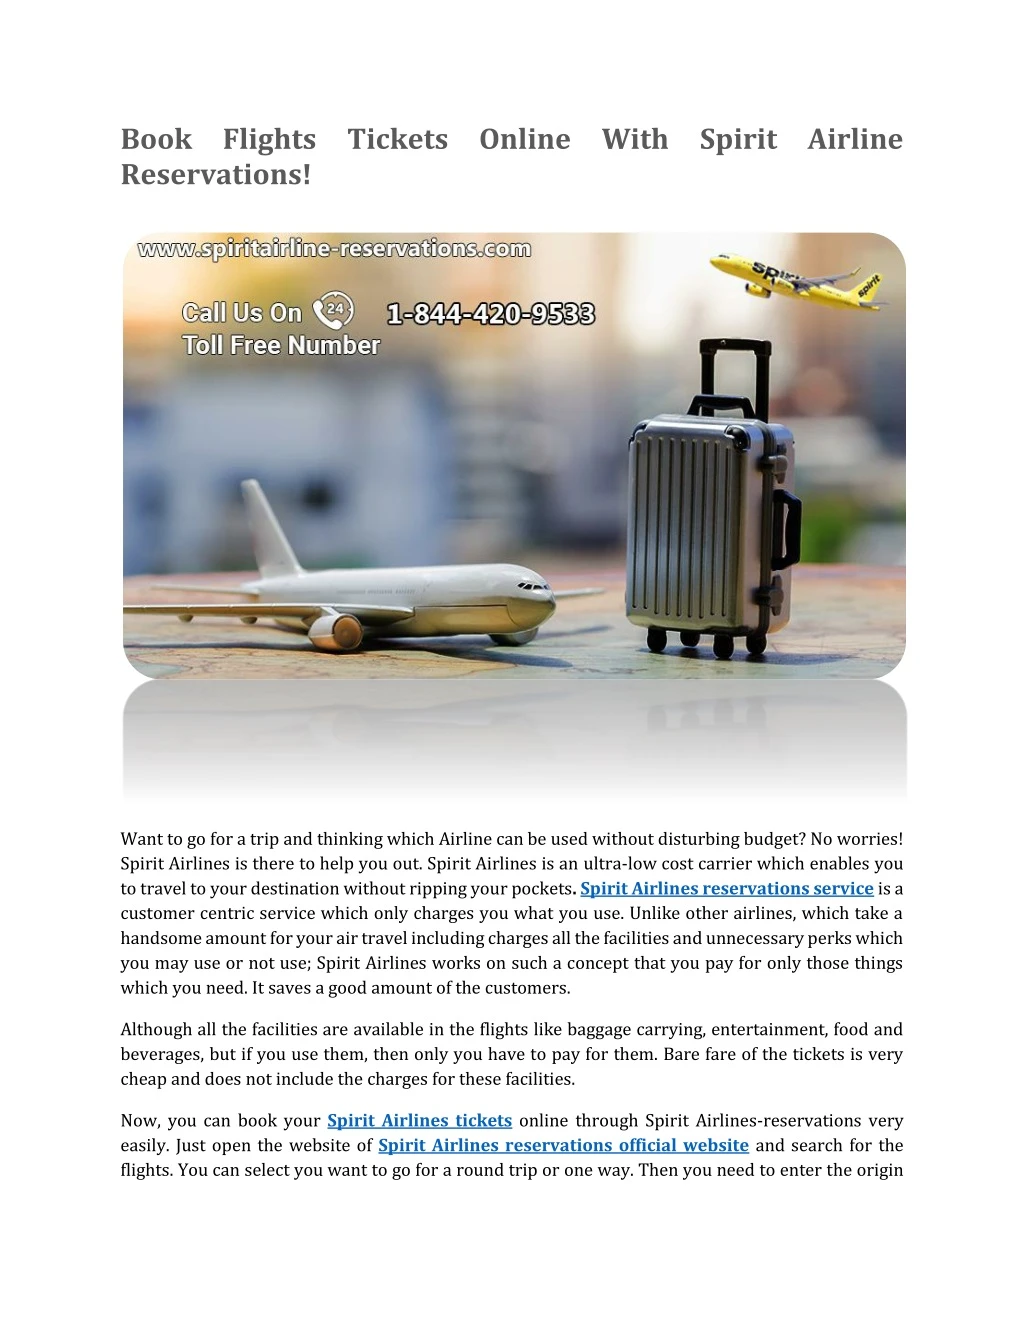 book flights tickets online with spirit airline